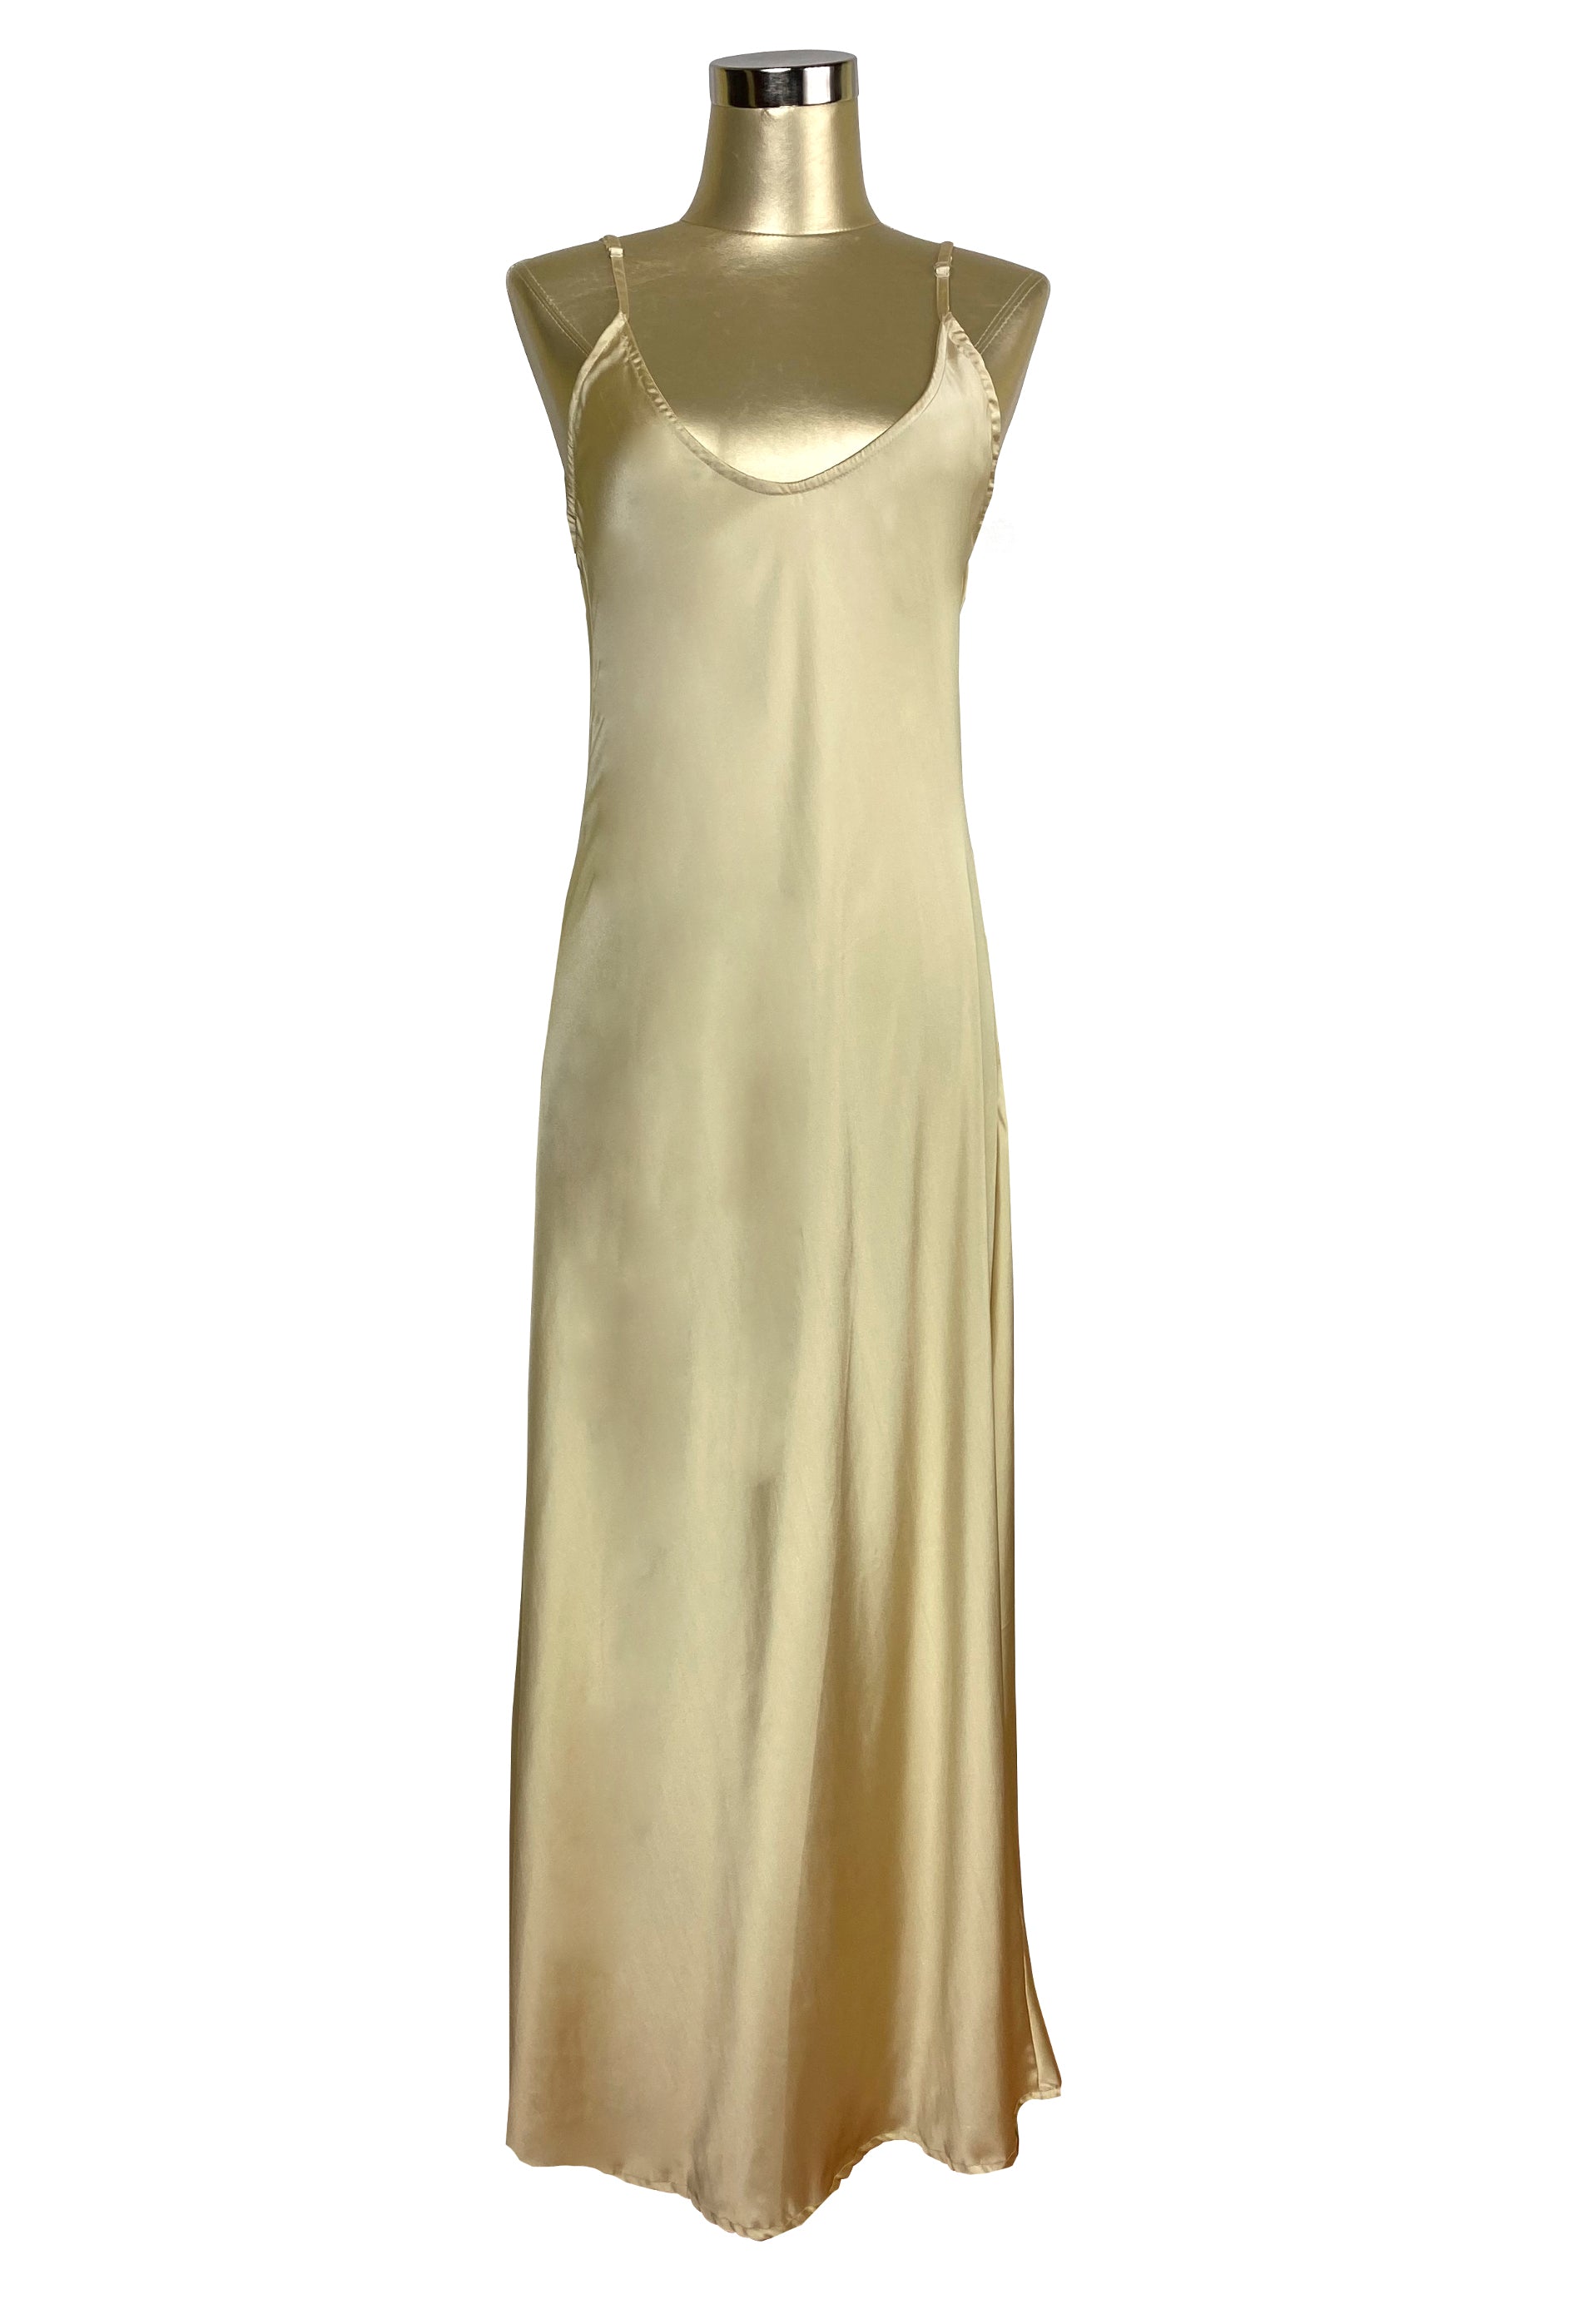 1930's Bias Glamour Full Length Gatsby Slip Dress - Gold